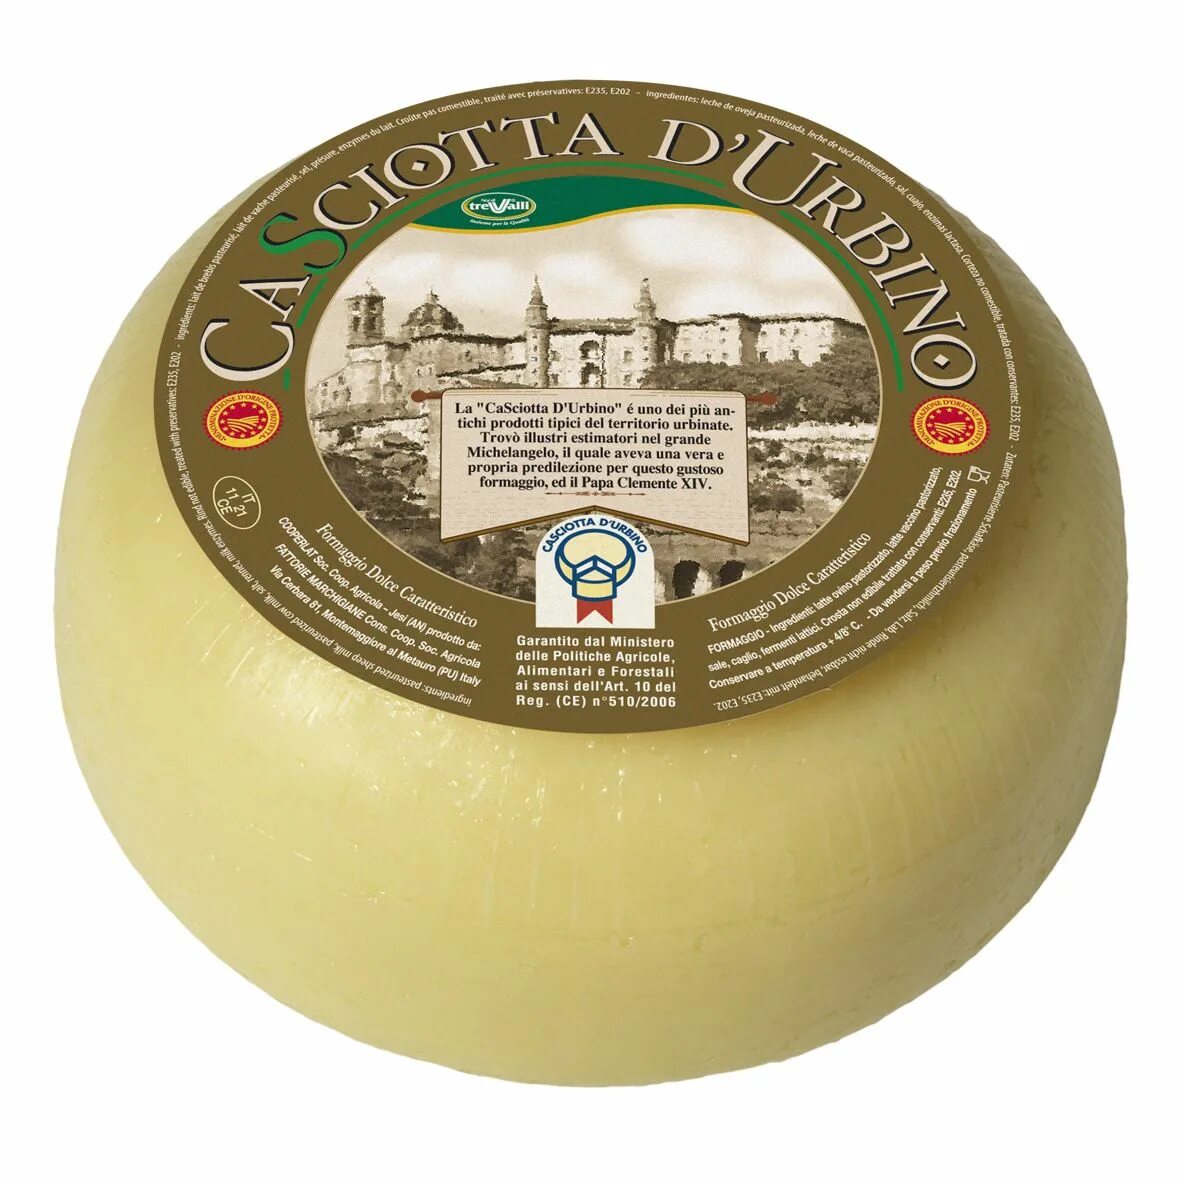 Сыр Качотта упаковка. Круглые сыры. Итальянский сыр. Итальянский сыр круглый. Итальянские сыры купить